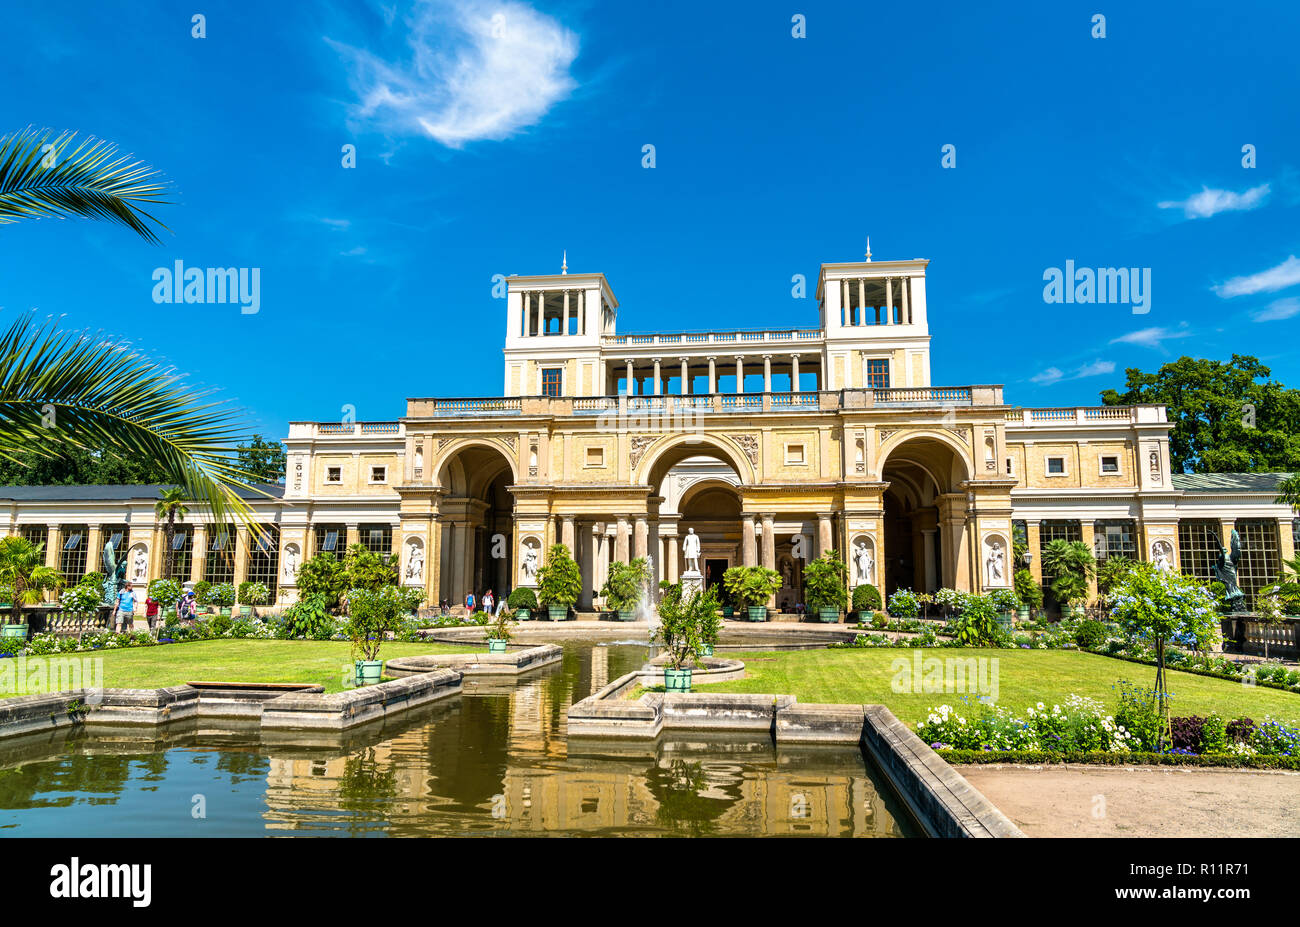 Le château de l'Orangerie dans le parc de Sanssouci de Potsdam, Allemagne Banque D'Images